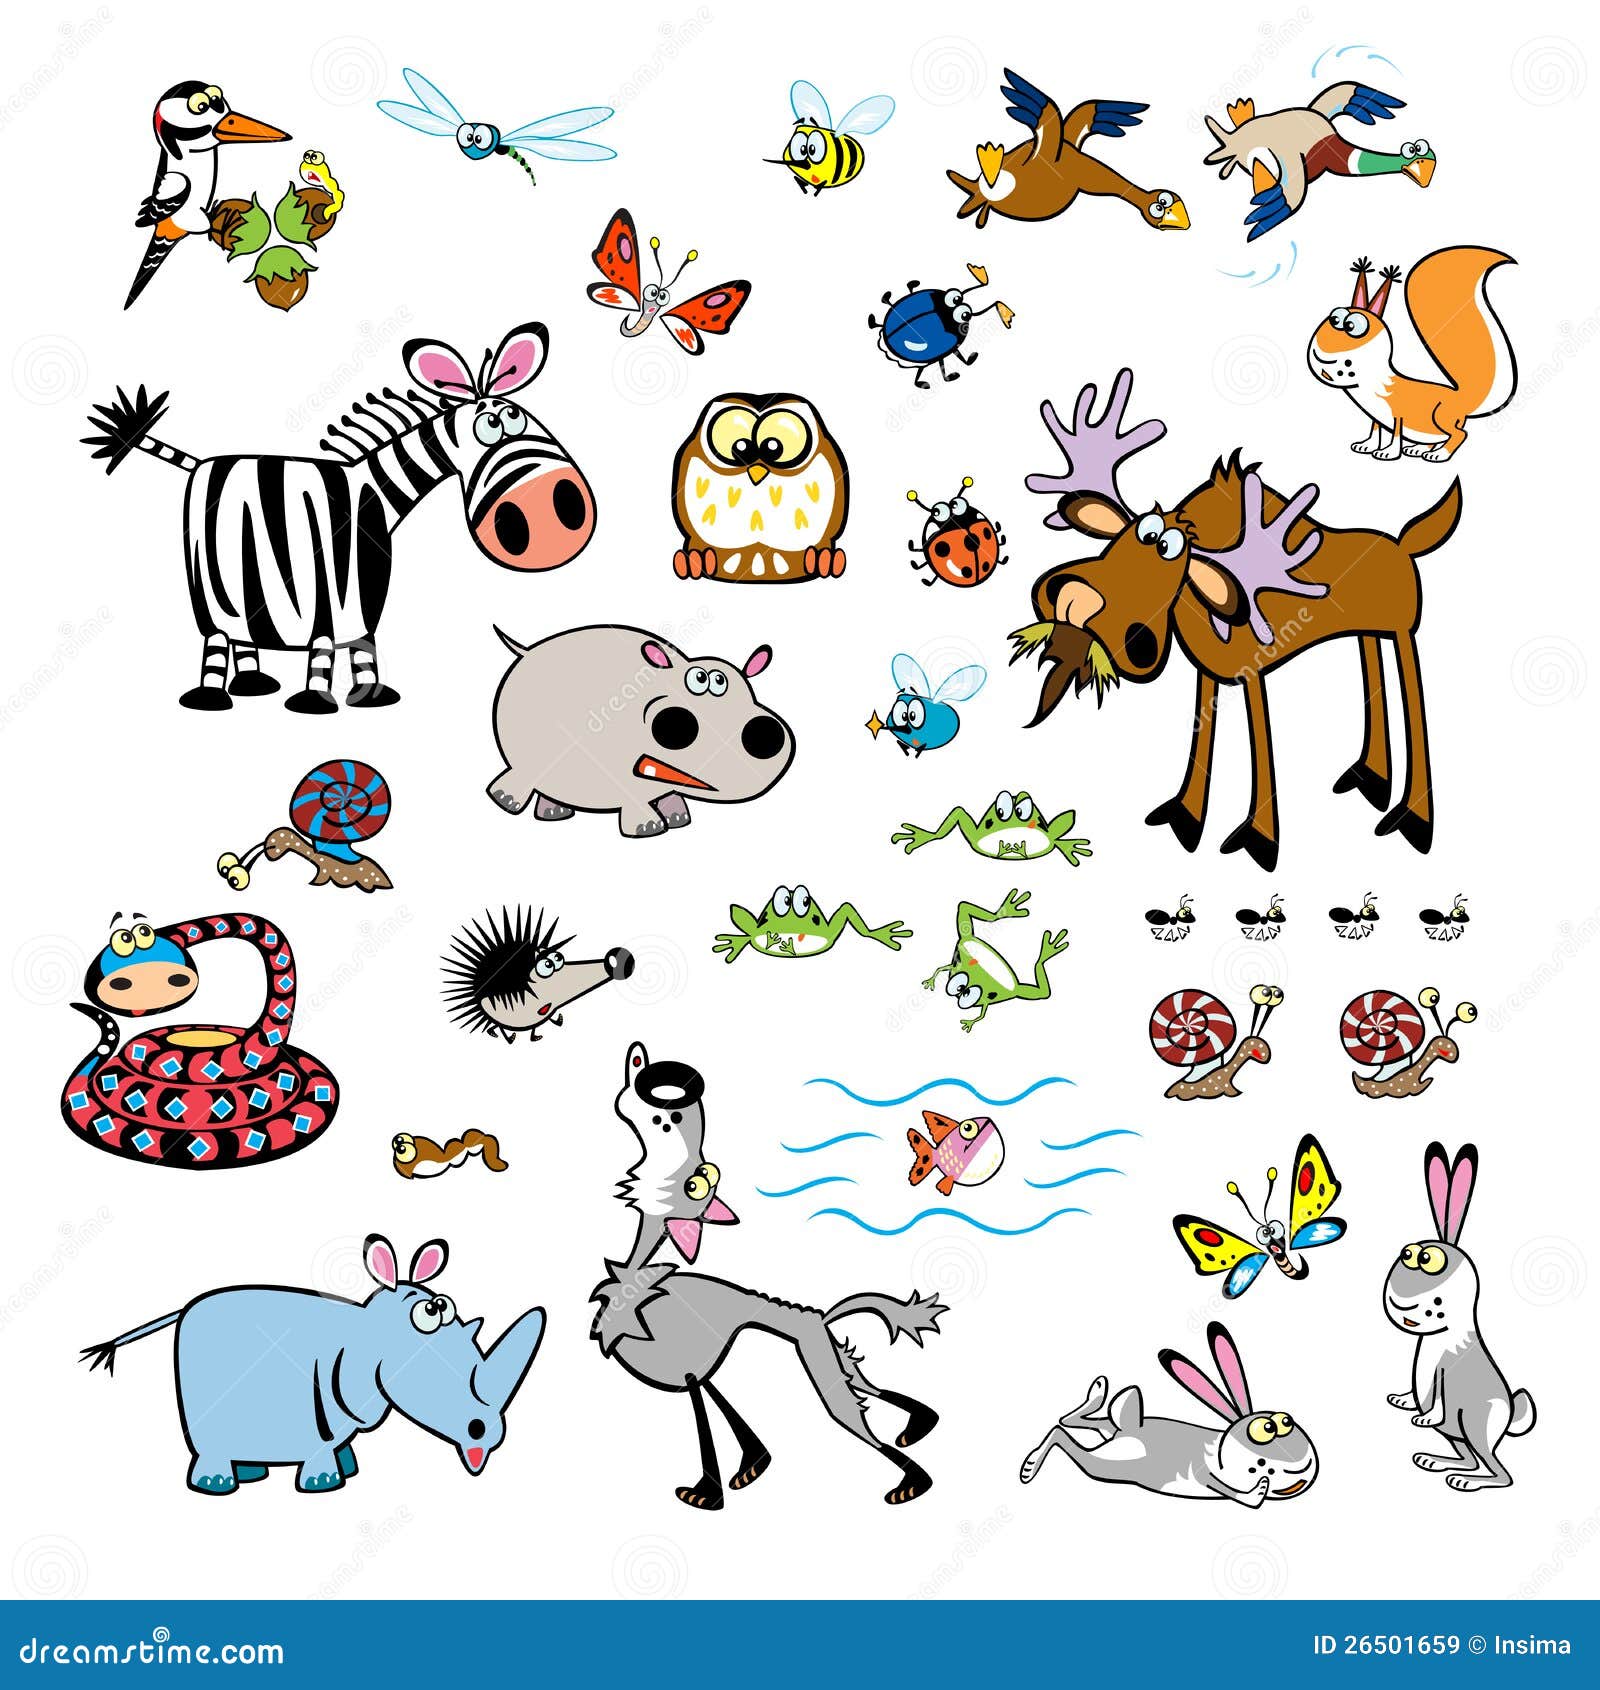 Set Of Childish Cartoon Wild Animals Royalty Free Stock Images - Image: 26501659